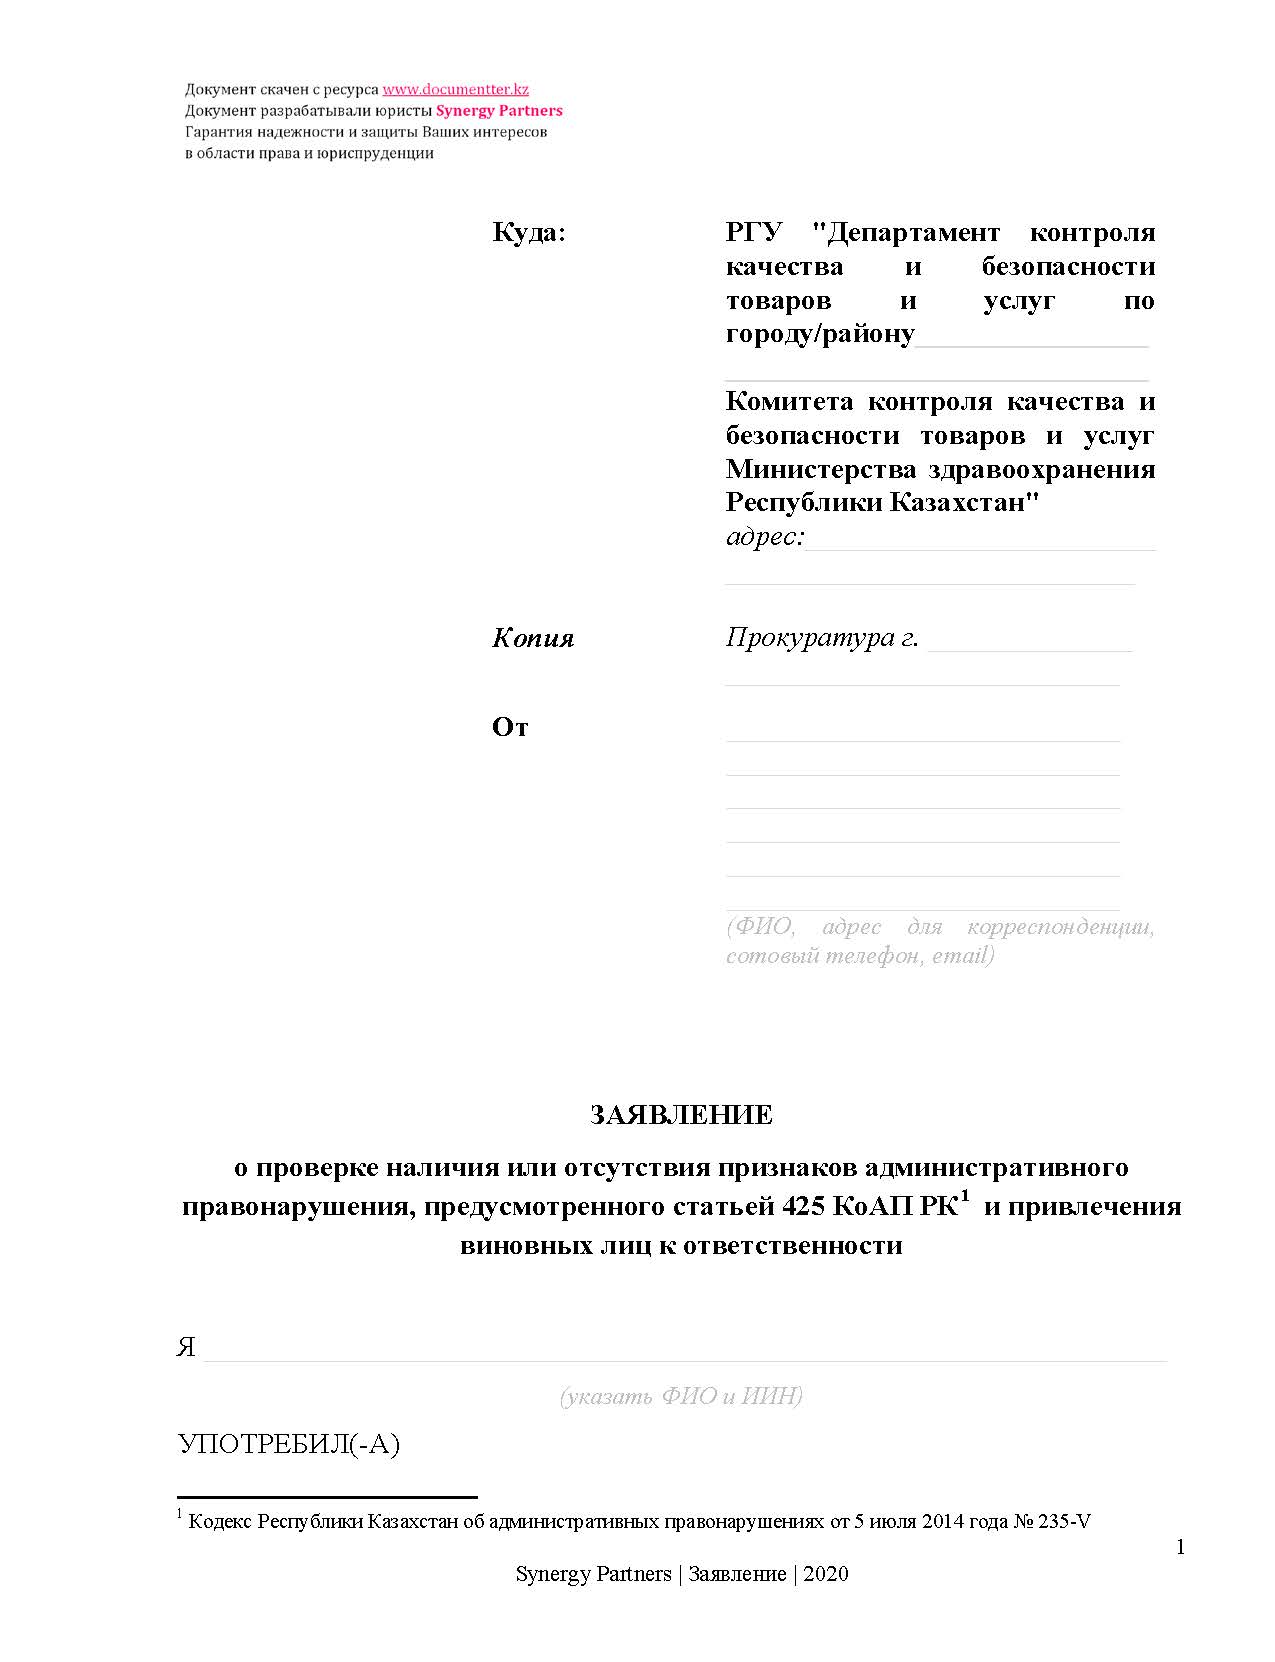 Заявление в СЭС касательно отравления 2 | documentter.kz в Казахстане 